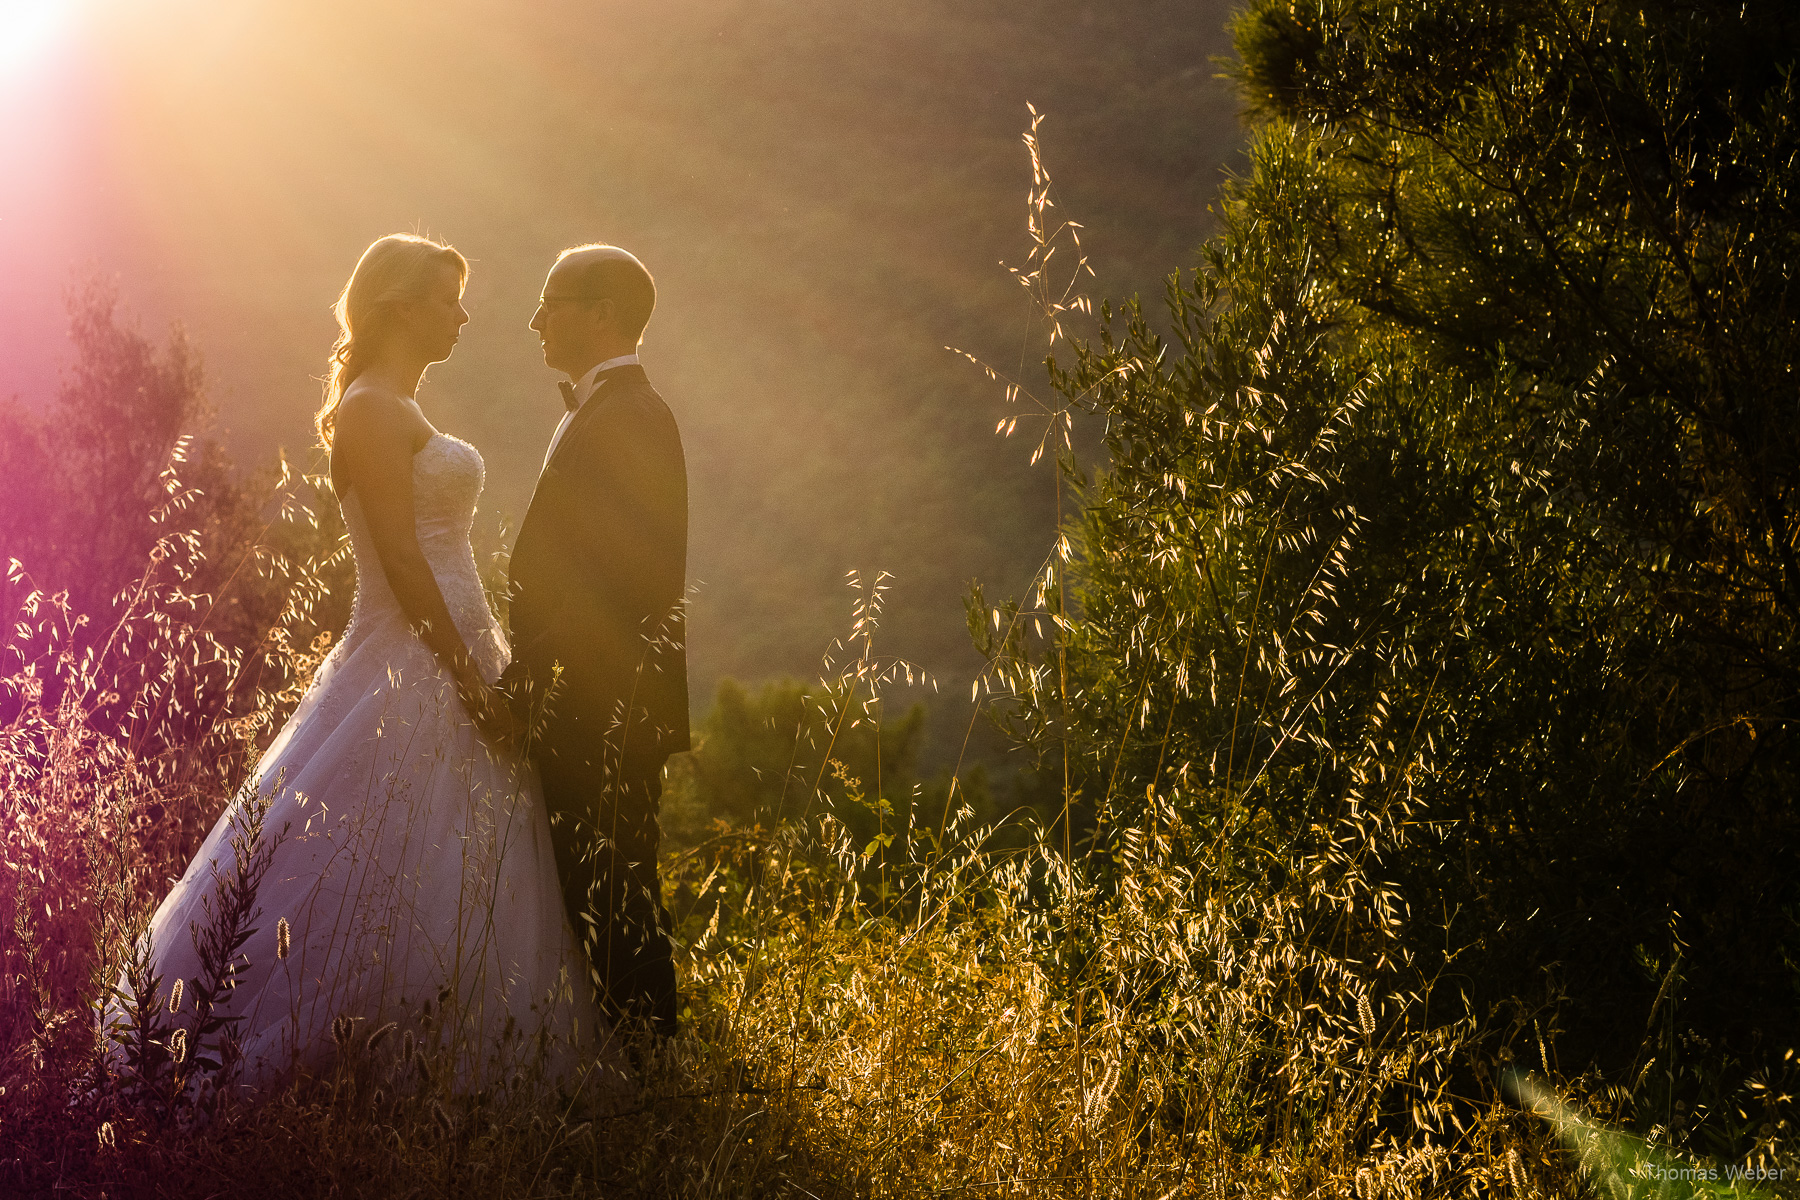 After Wedding Shooting in Marbella (Spanien), Hochzeitsfotograf Thomas Weber aus Oldenburg